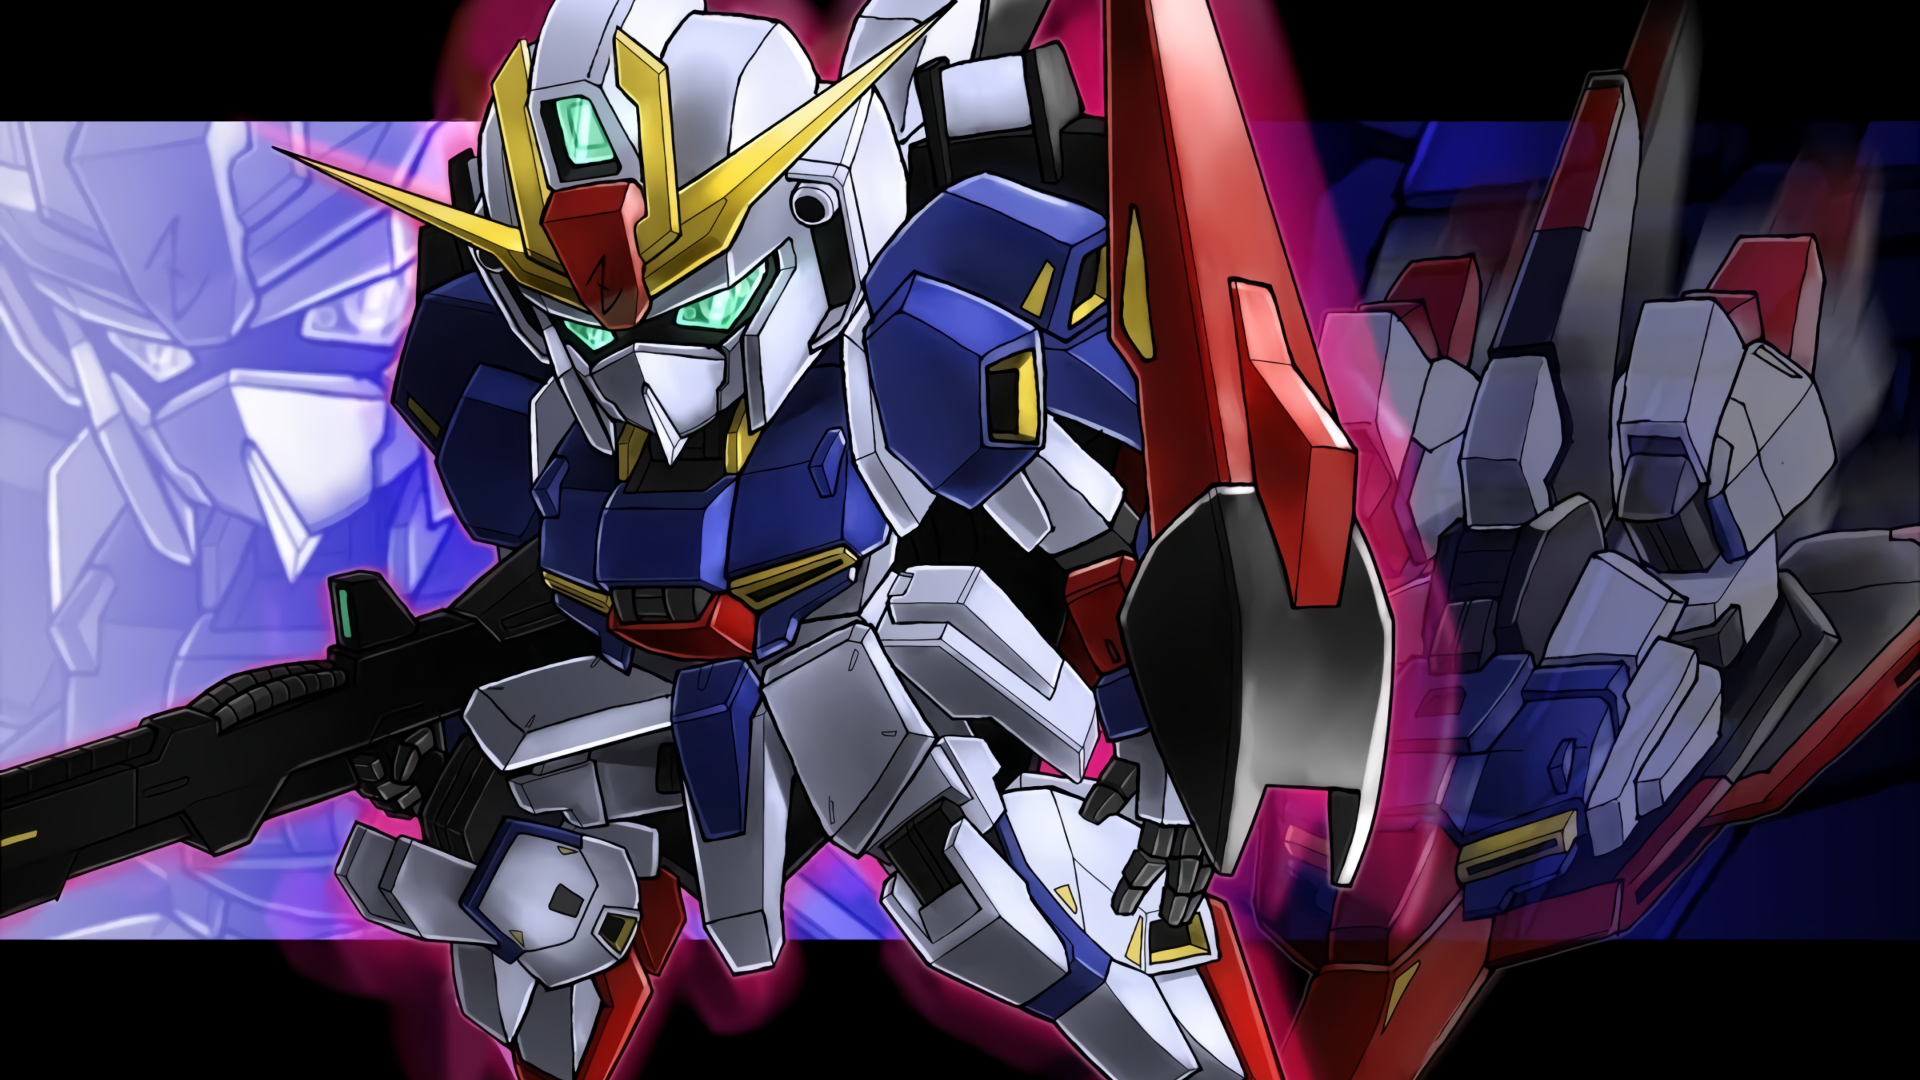 SD Kidou Senshi Gundam 2